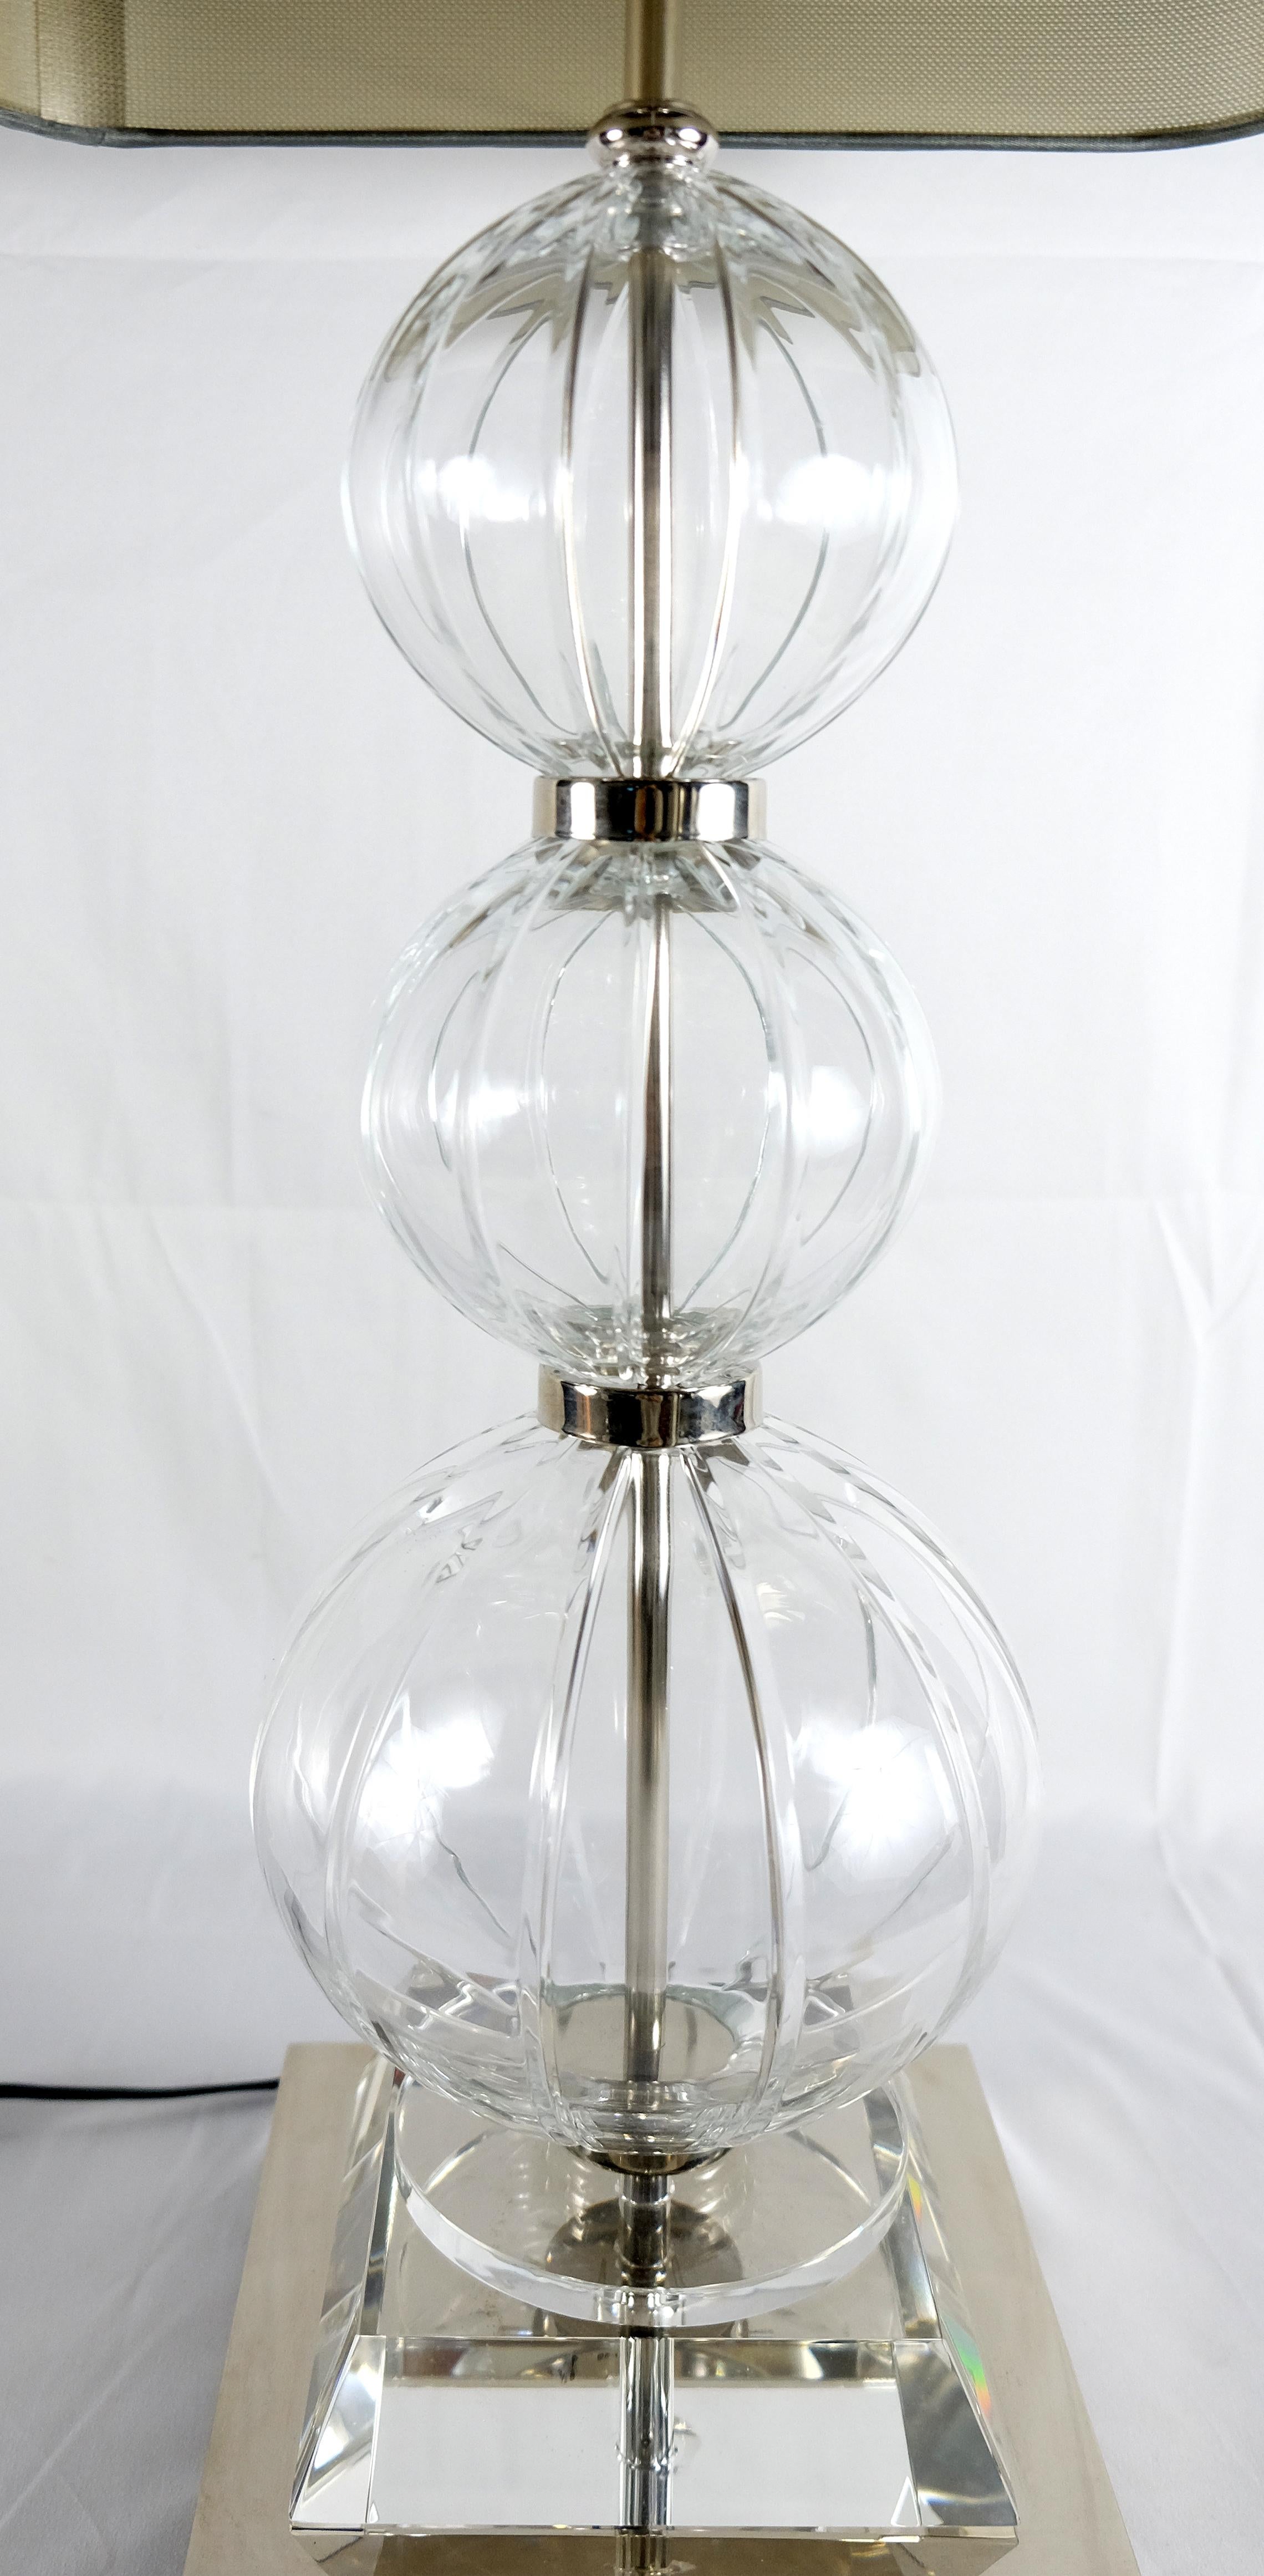 Italian Atlante Table Lamp from La Collezione Attilio Amato Laudarte Sl, Pair Available